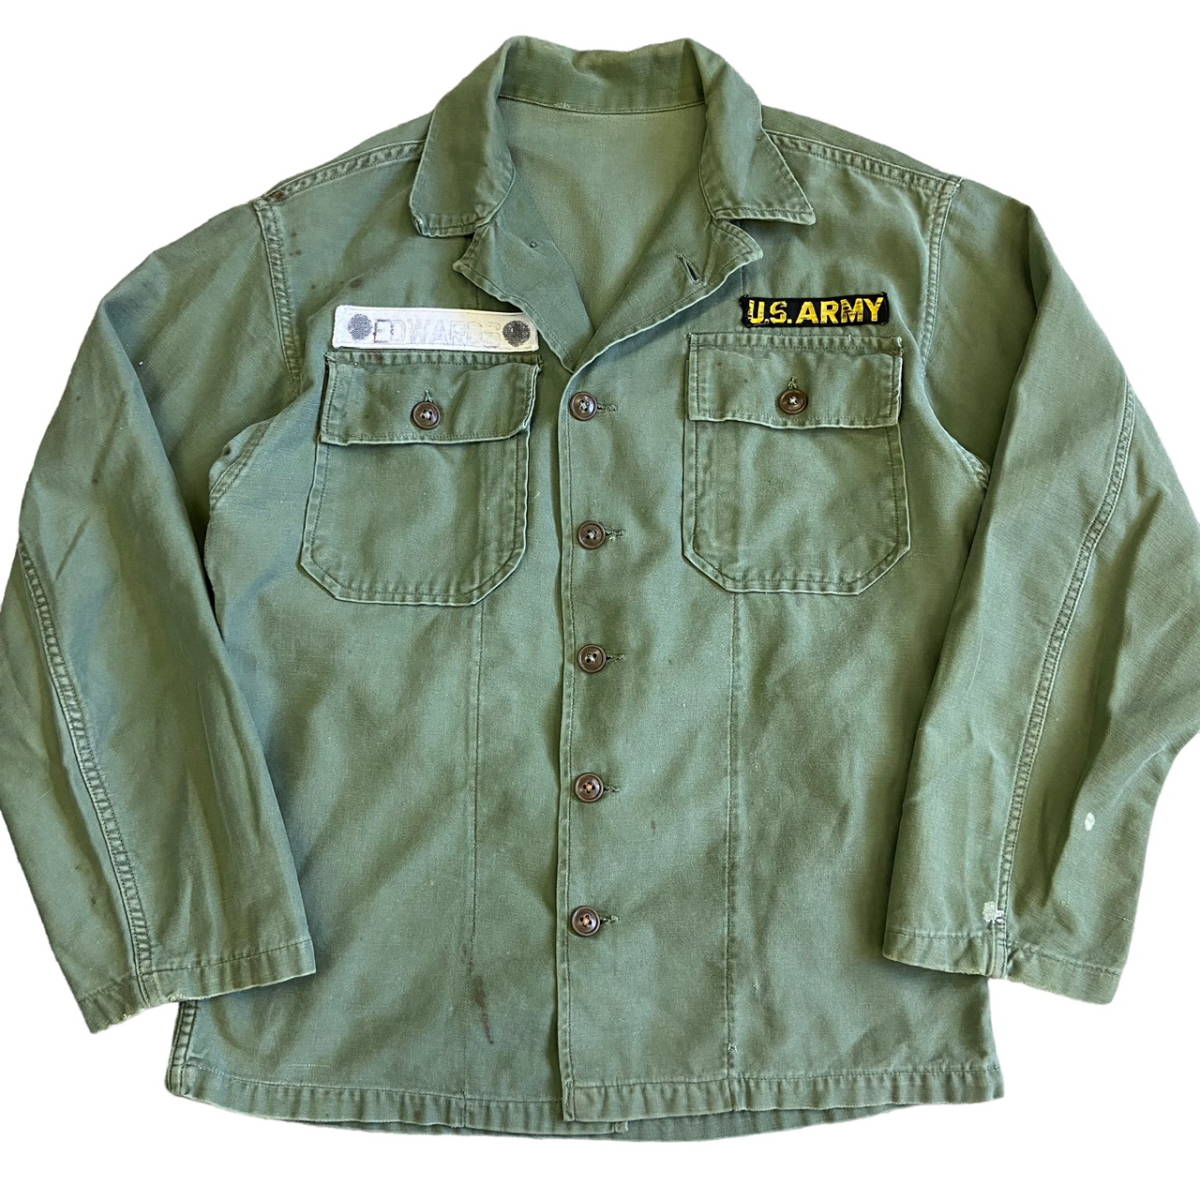 60年代 米軍 US ARMY ユーティリティシャツ SHIRT UTILITY 筒袖 ミリタリー シャツ ジャケット 60s 70s ヴィンテージ